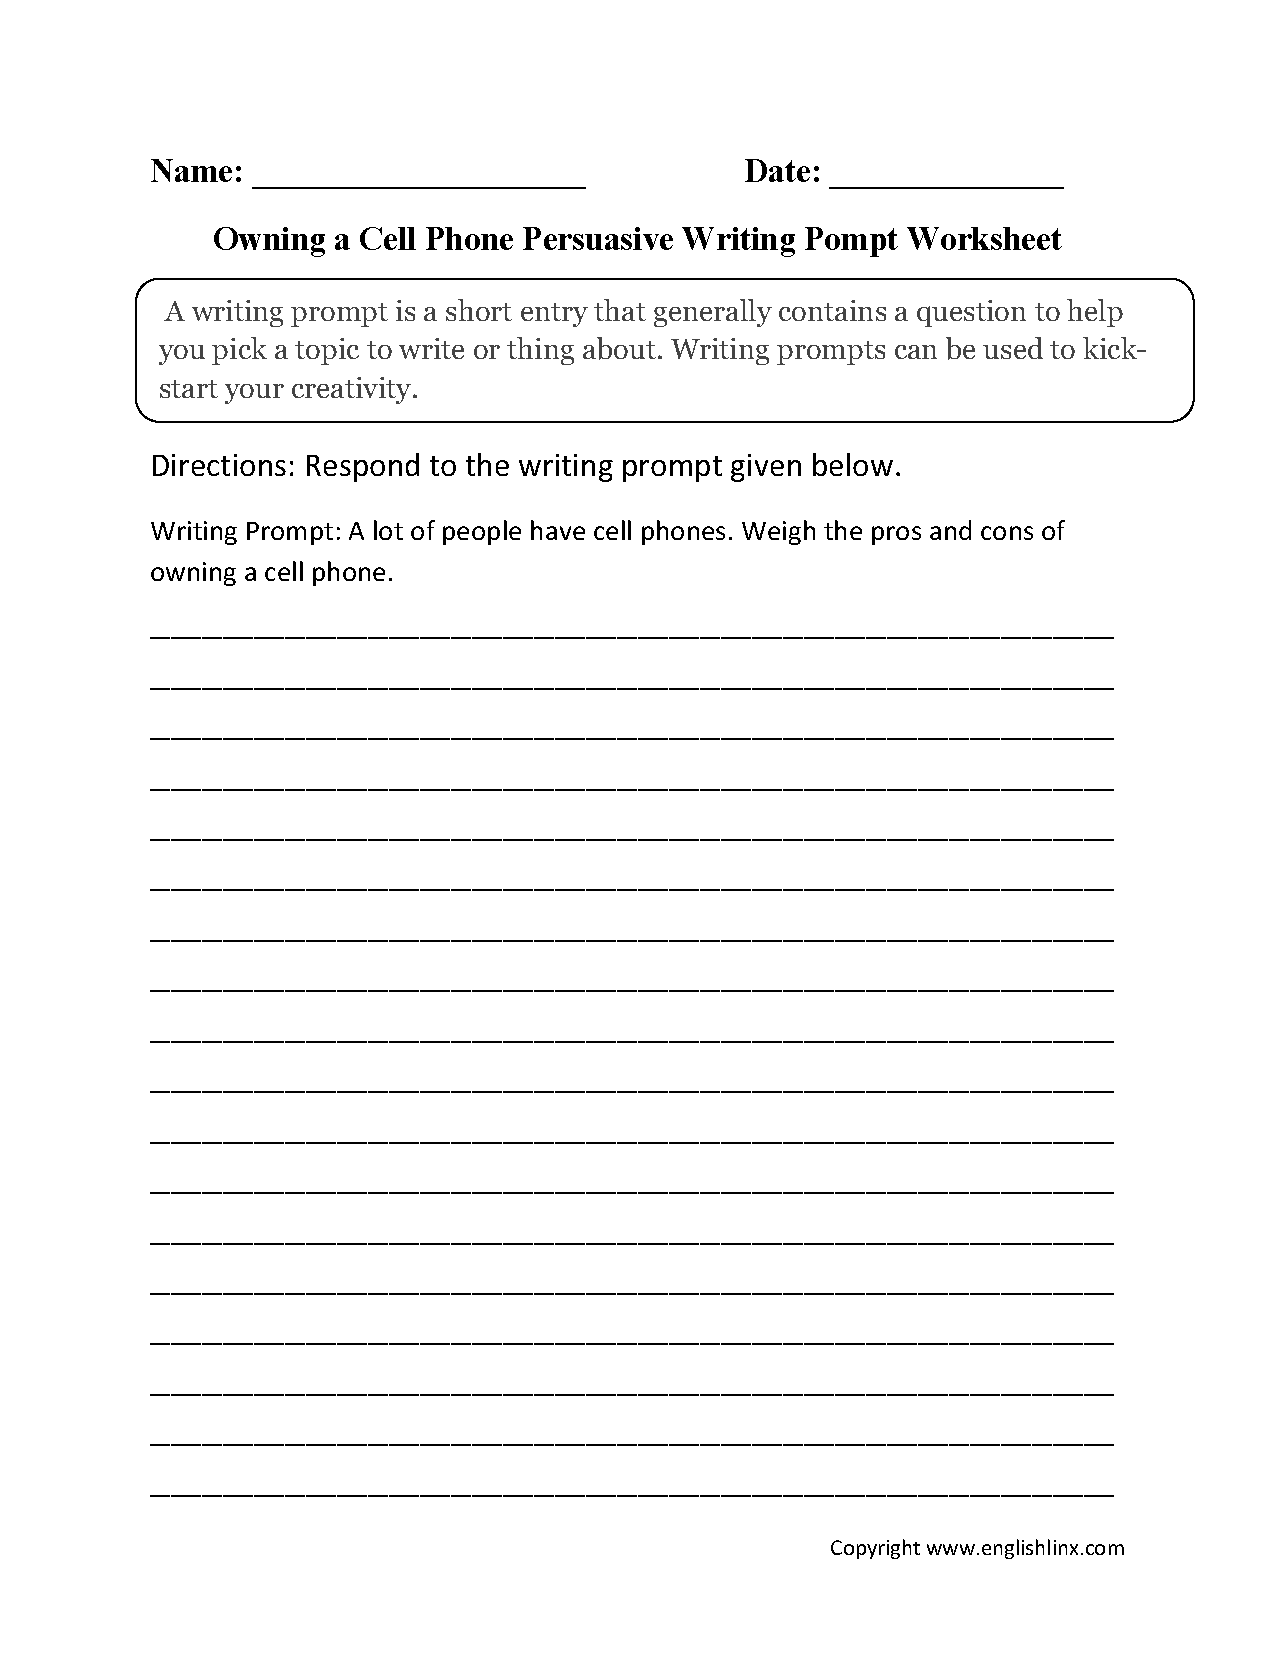 worksheets on persuasive essay